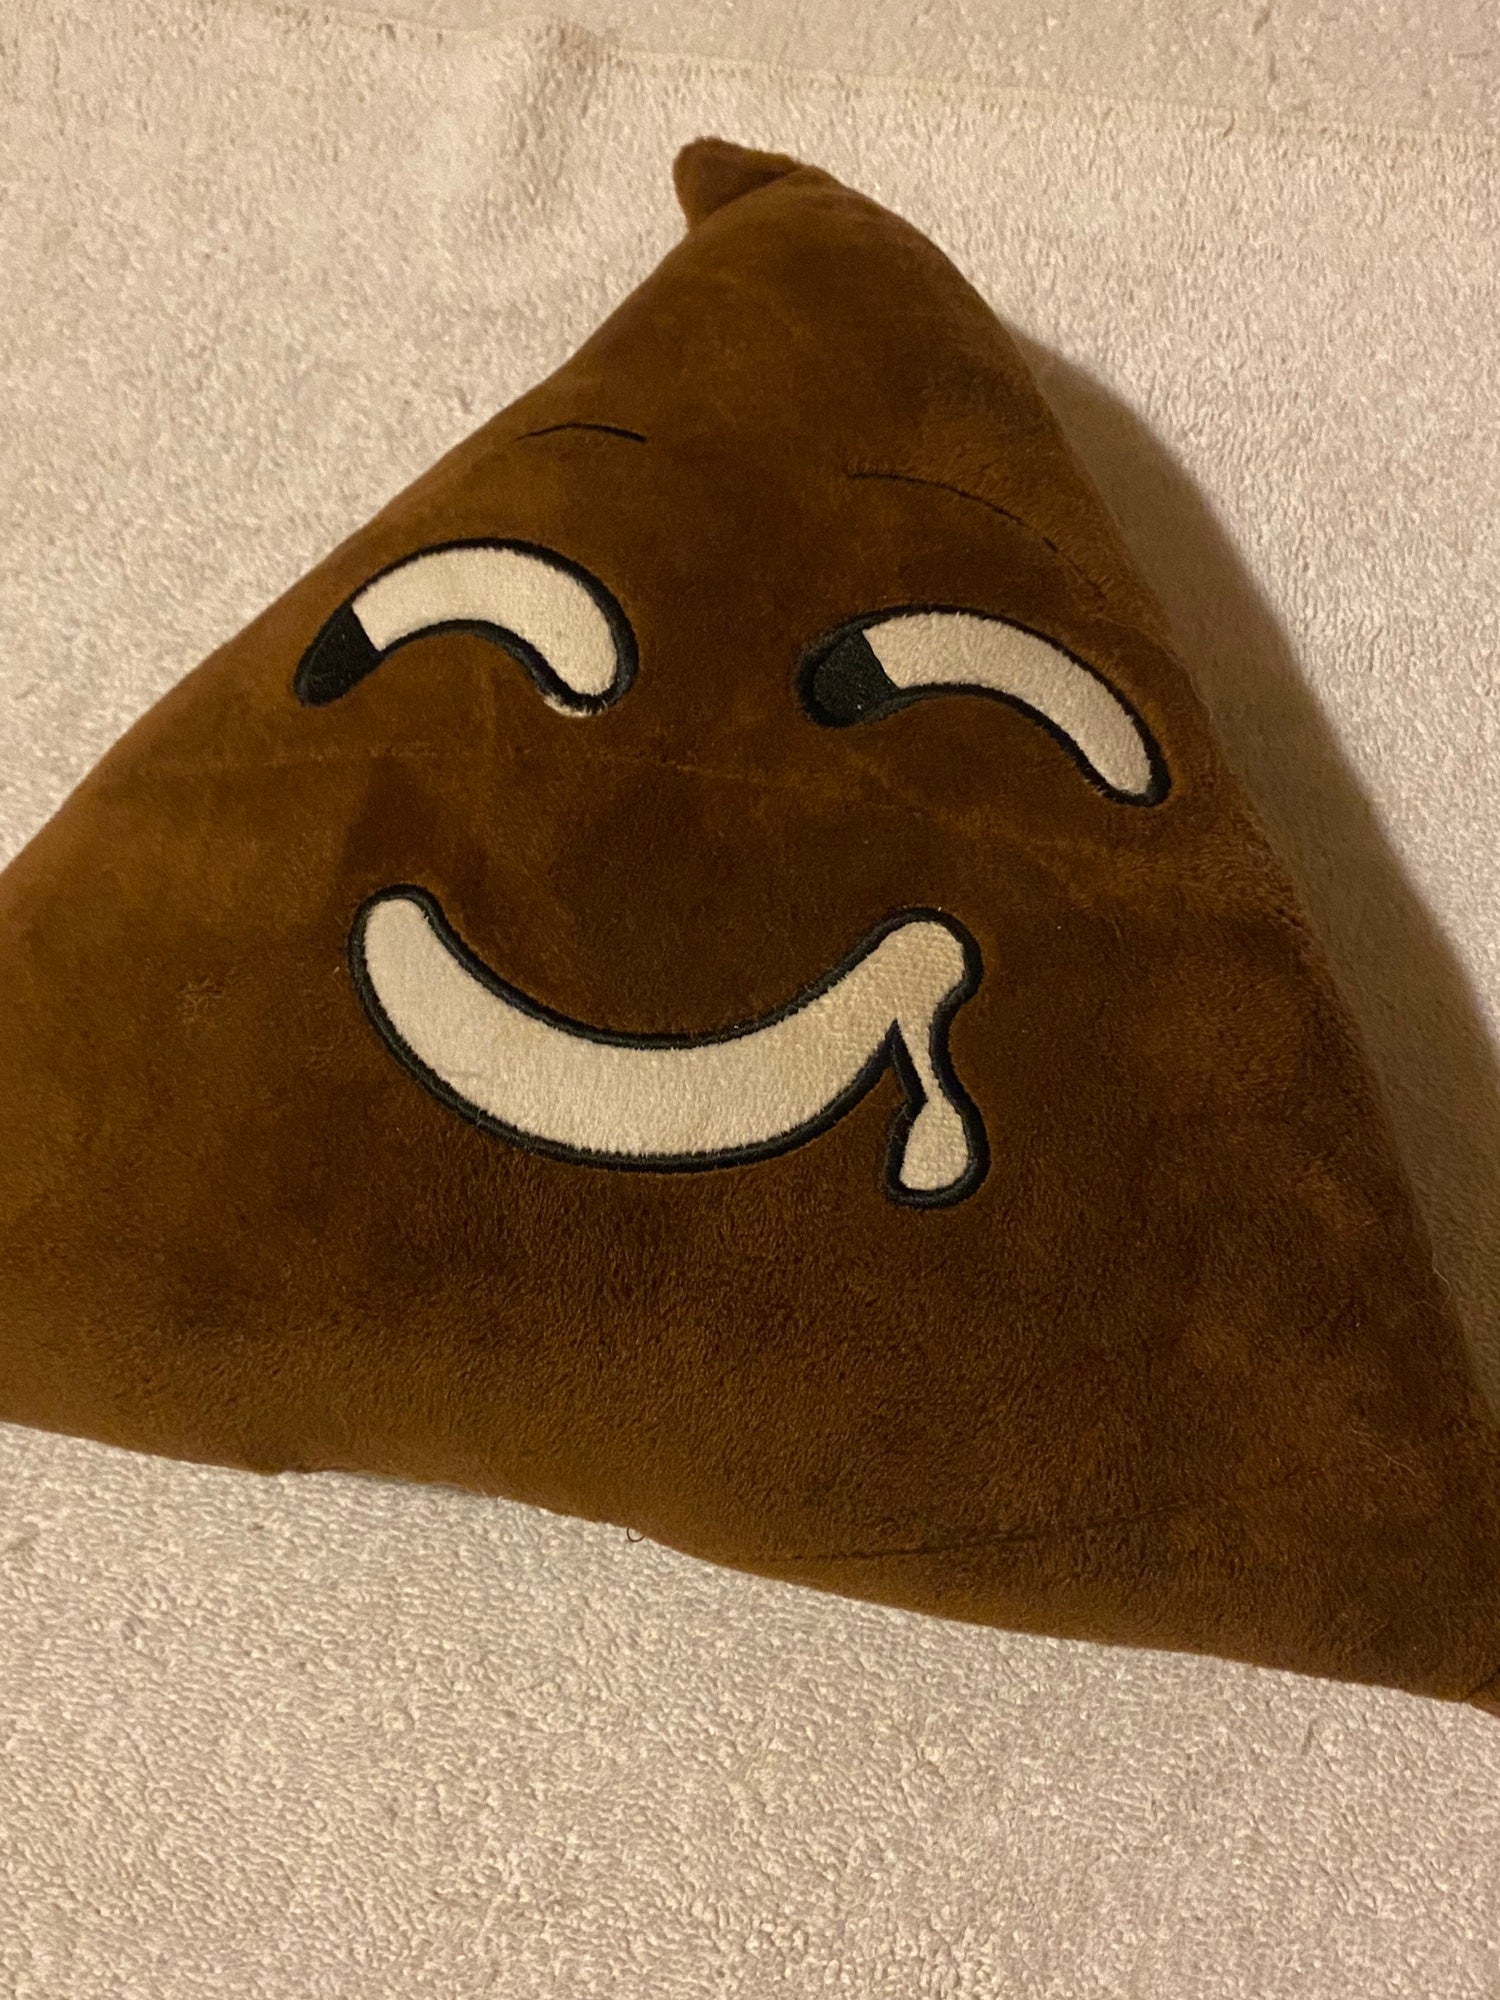 poop emoji pillow